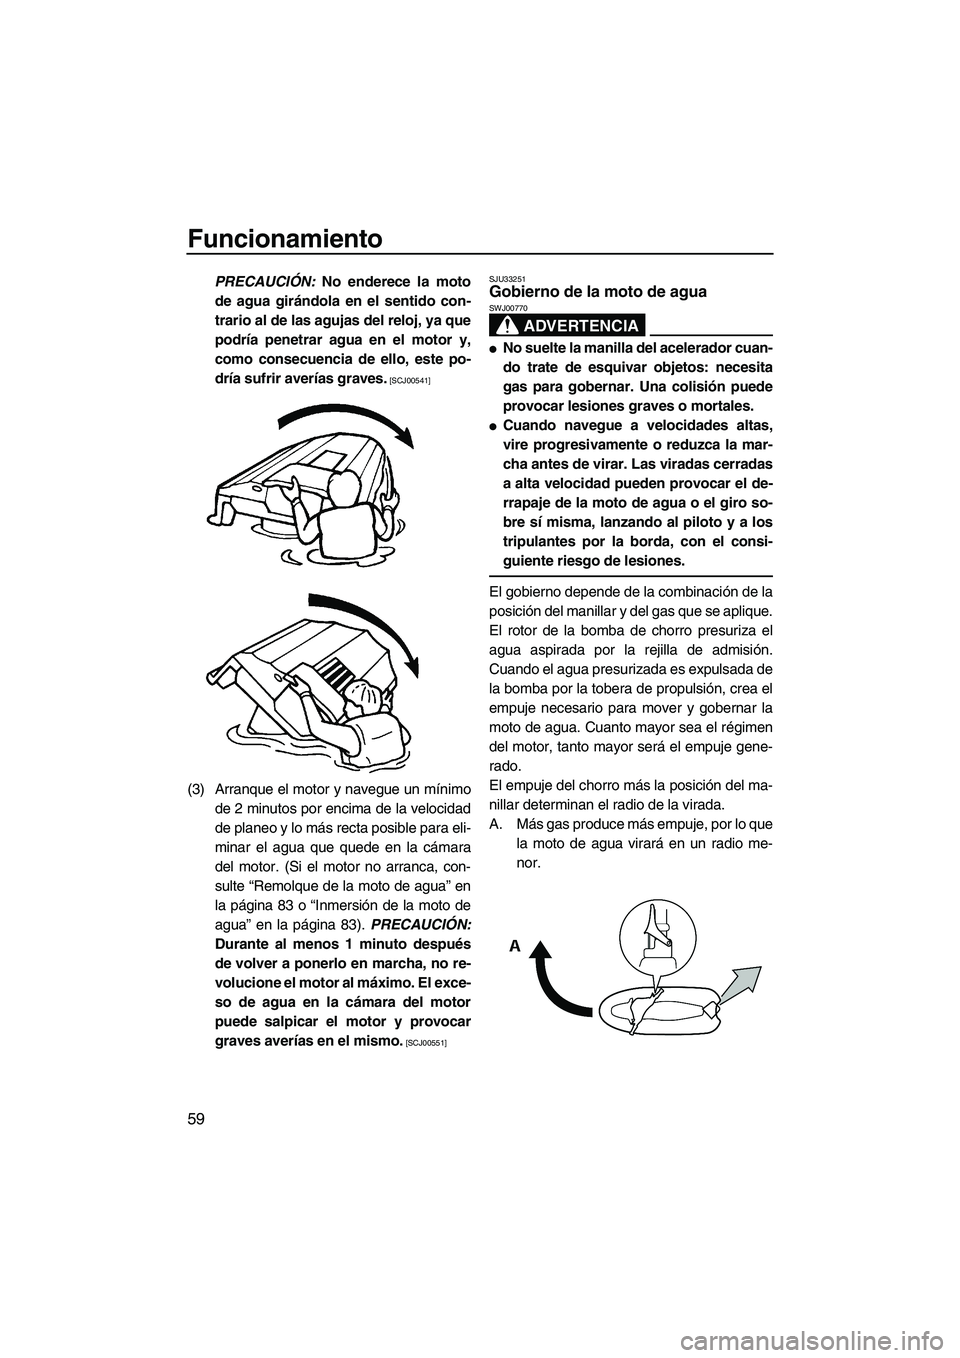 YAMAHA VX SPORT 2009  Manuale de Empleo (in Spanish) Funcionamiento
59
PRECAUCIÓN: No enderece la moto
de agua girándola en el sentido con-
trario al de las agujas del reloj, ya que
podría penetrar agua en el motor y,
como consecuencia de ello, este 